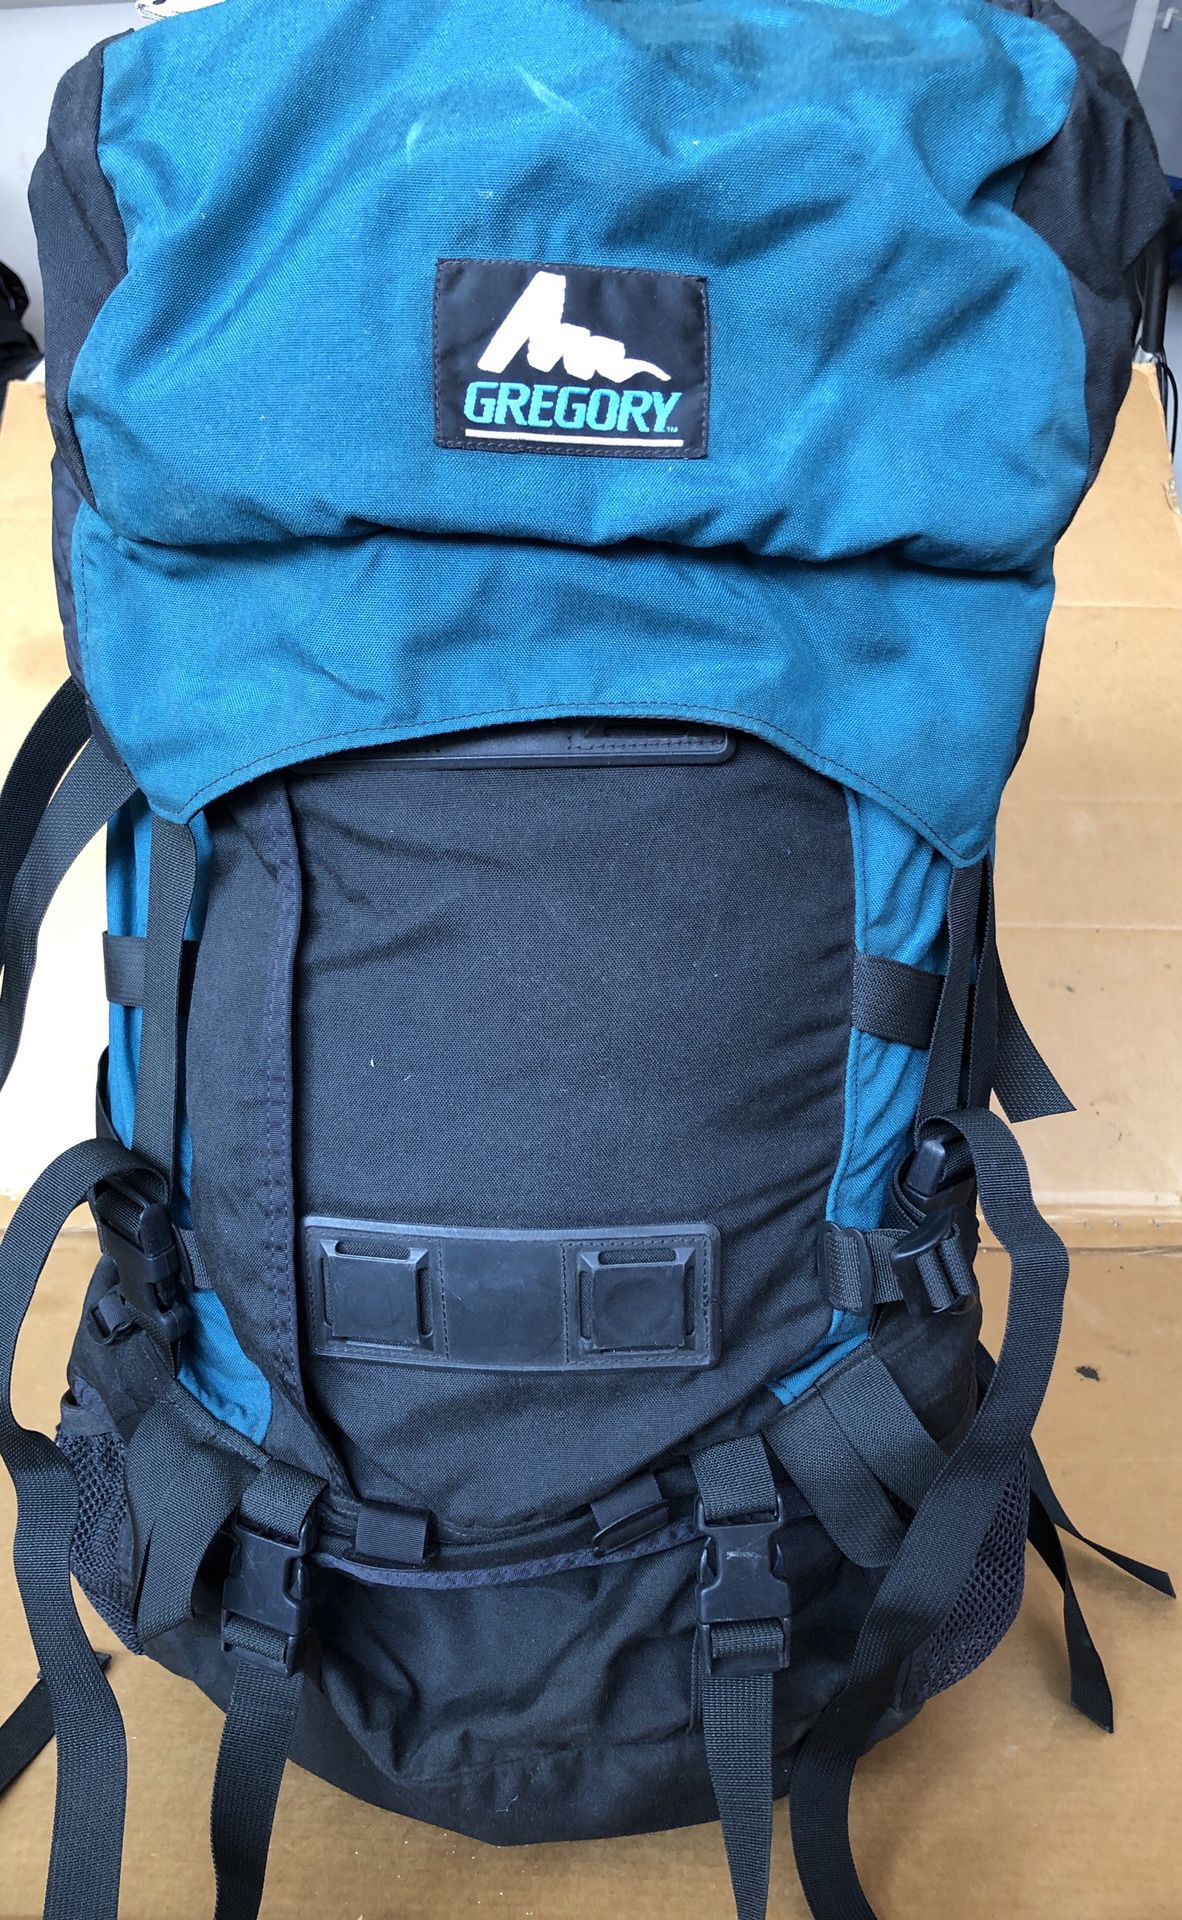 Gregory 65-70liter backpack